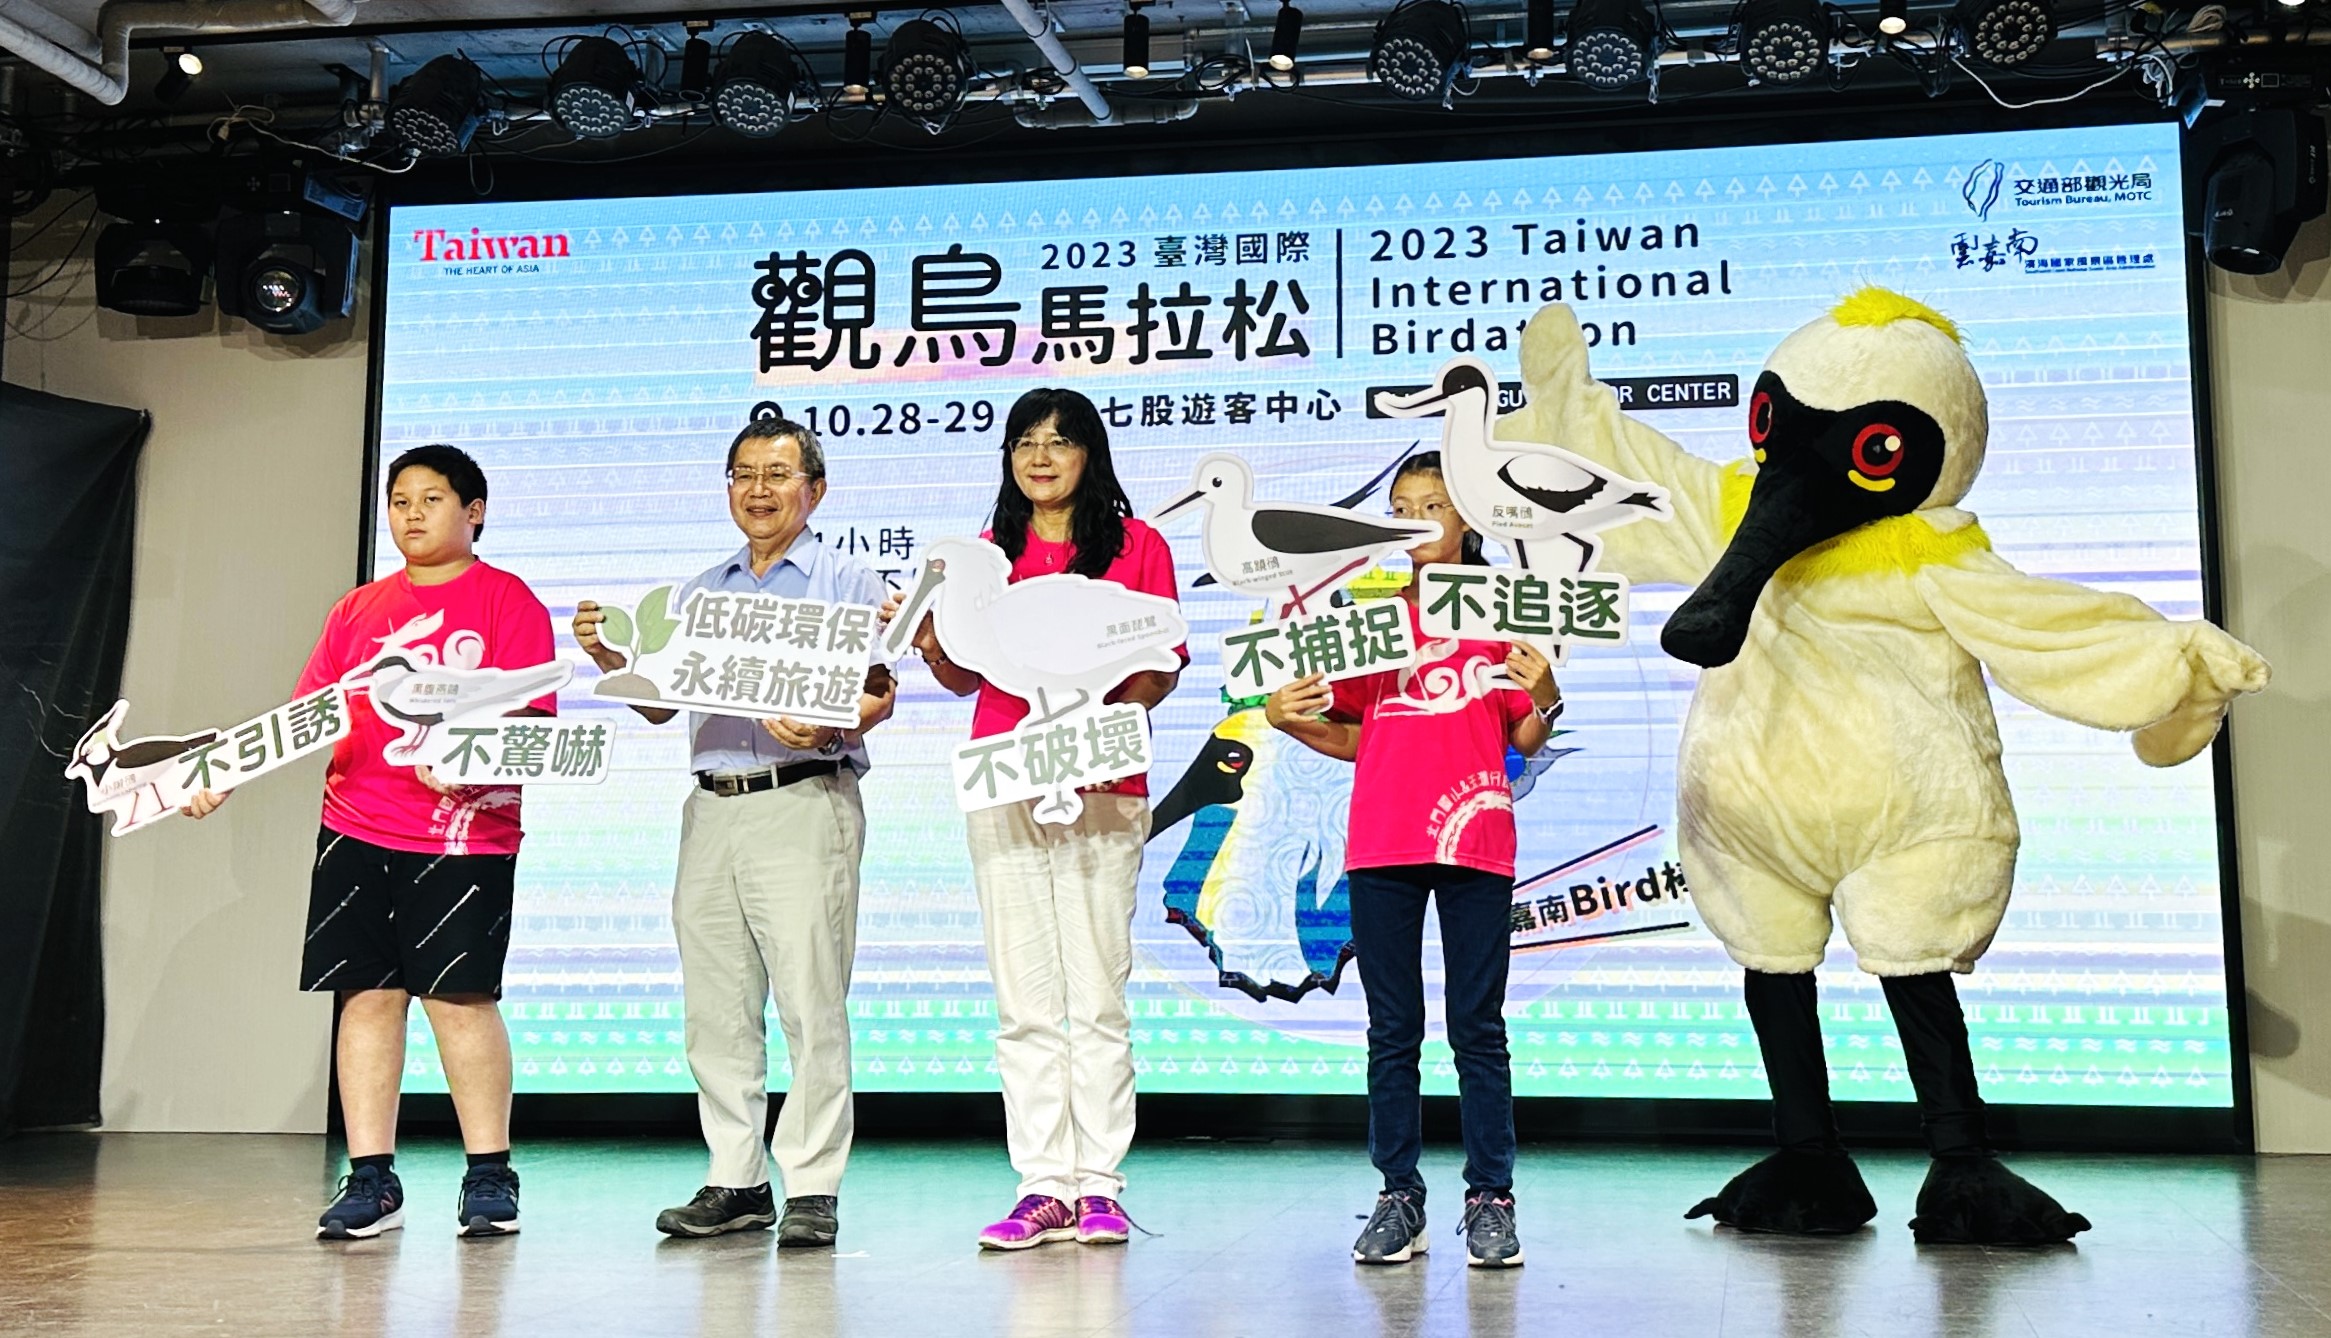 2023臺灣國際觀鳥馬拉松活動  號召各地鳥友報名